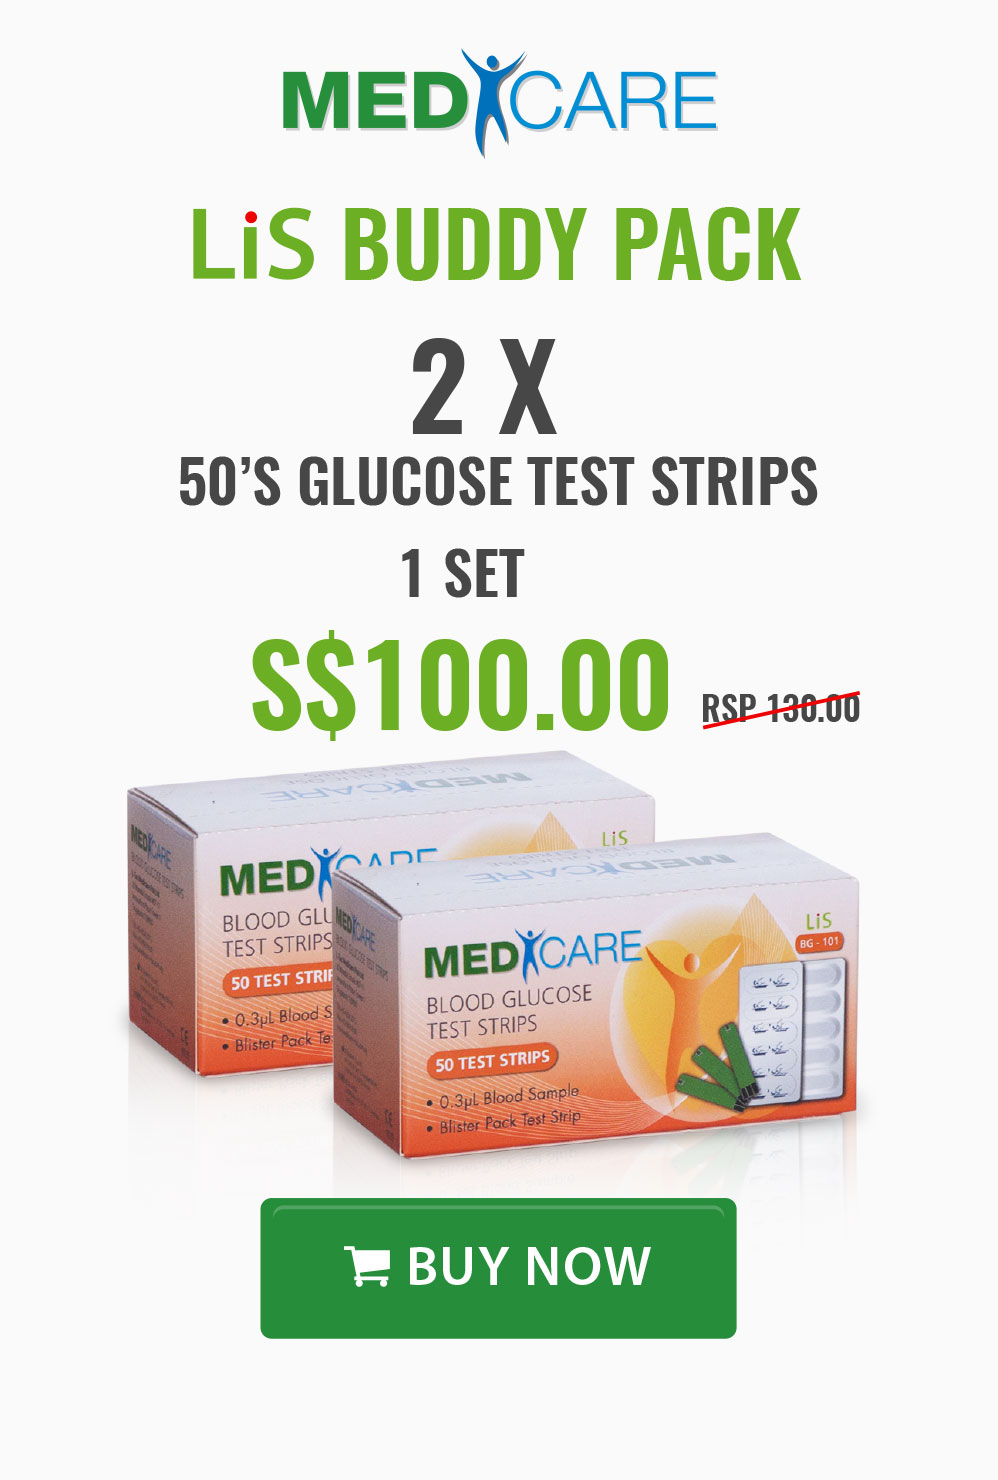 L-Tac-MediCare Buy 2 Get 1 Free